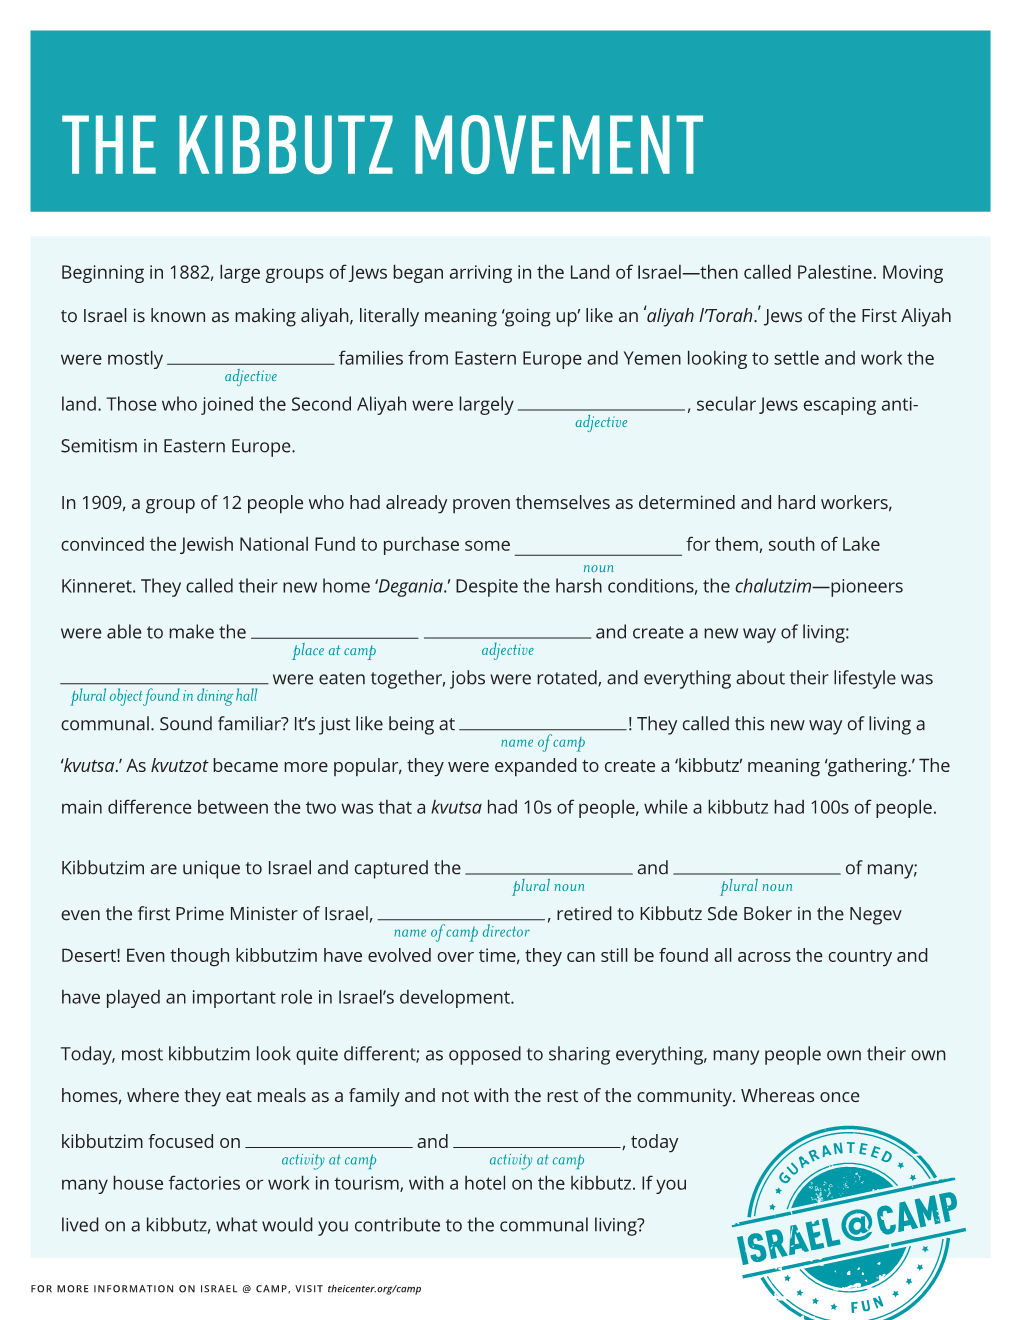 The Kibbutz Movement